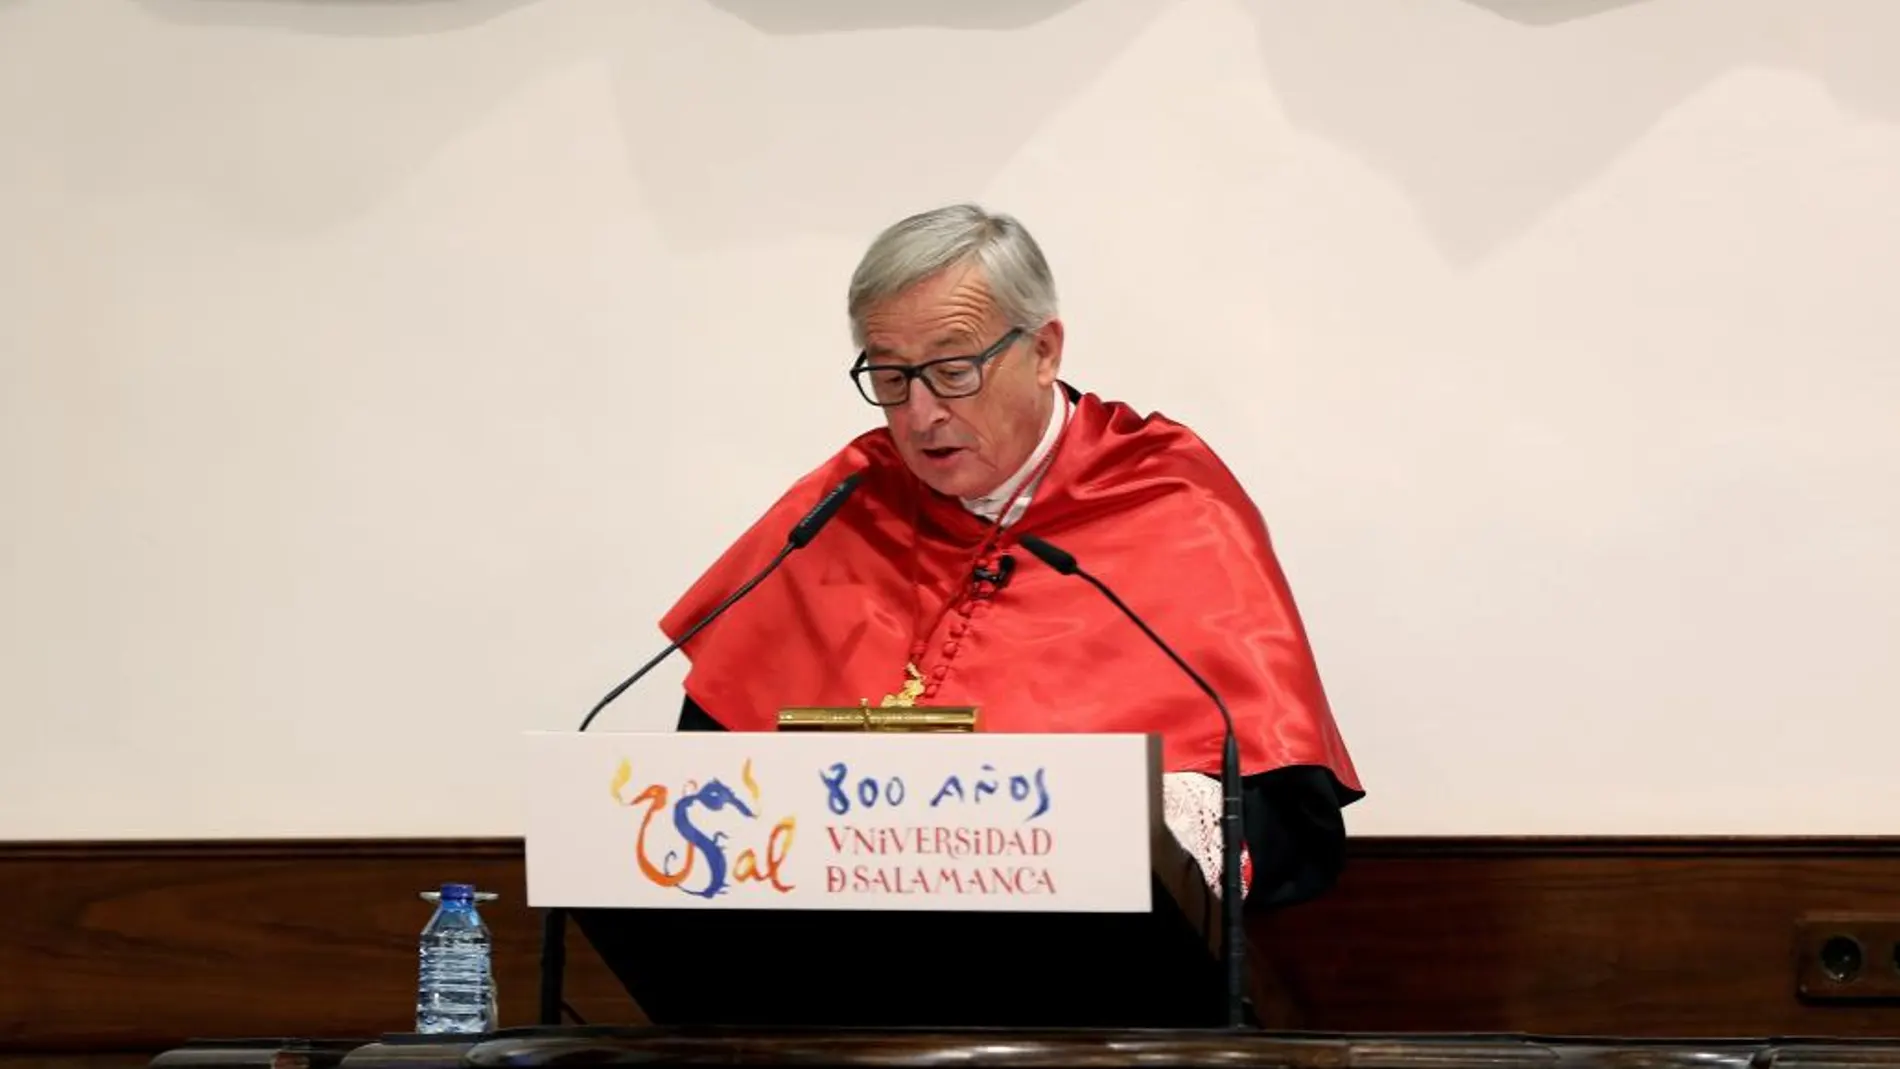 El presidente de la Comisión Europea, Jean Claude Juncker pronuncia unas palabras, durante el acto en el que ha sido investido doctor honoris causa por la Universidad de Salamanca. Efe/J.M.García